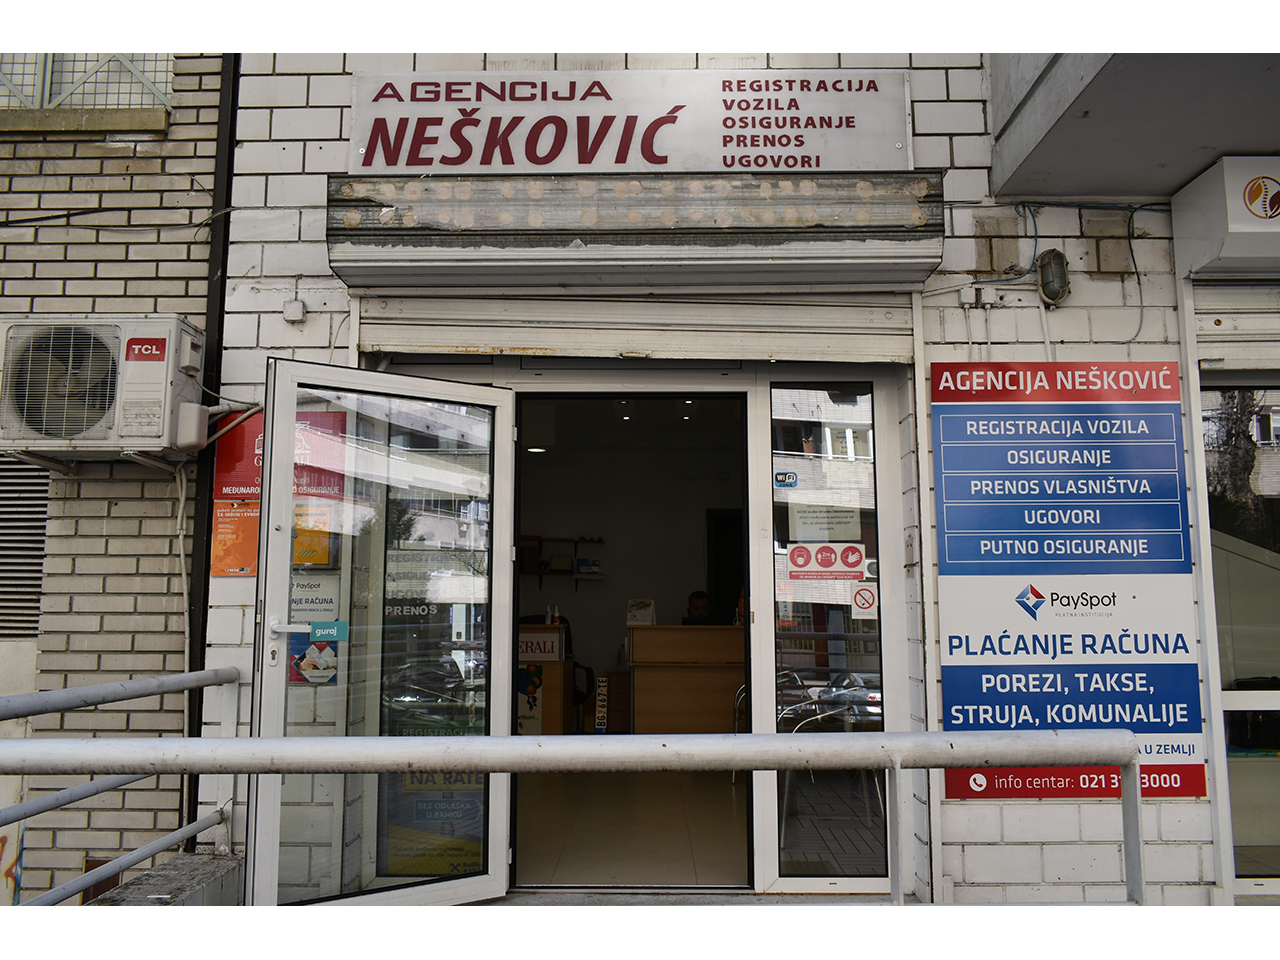 Slika 3 - AGENCIJA NEŠKOVIĆ Registracija vozila Beograd